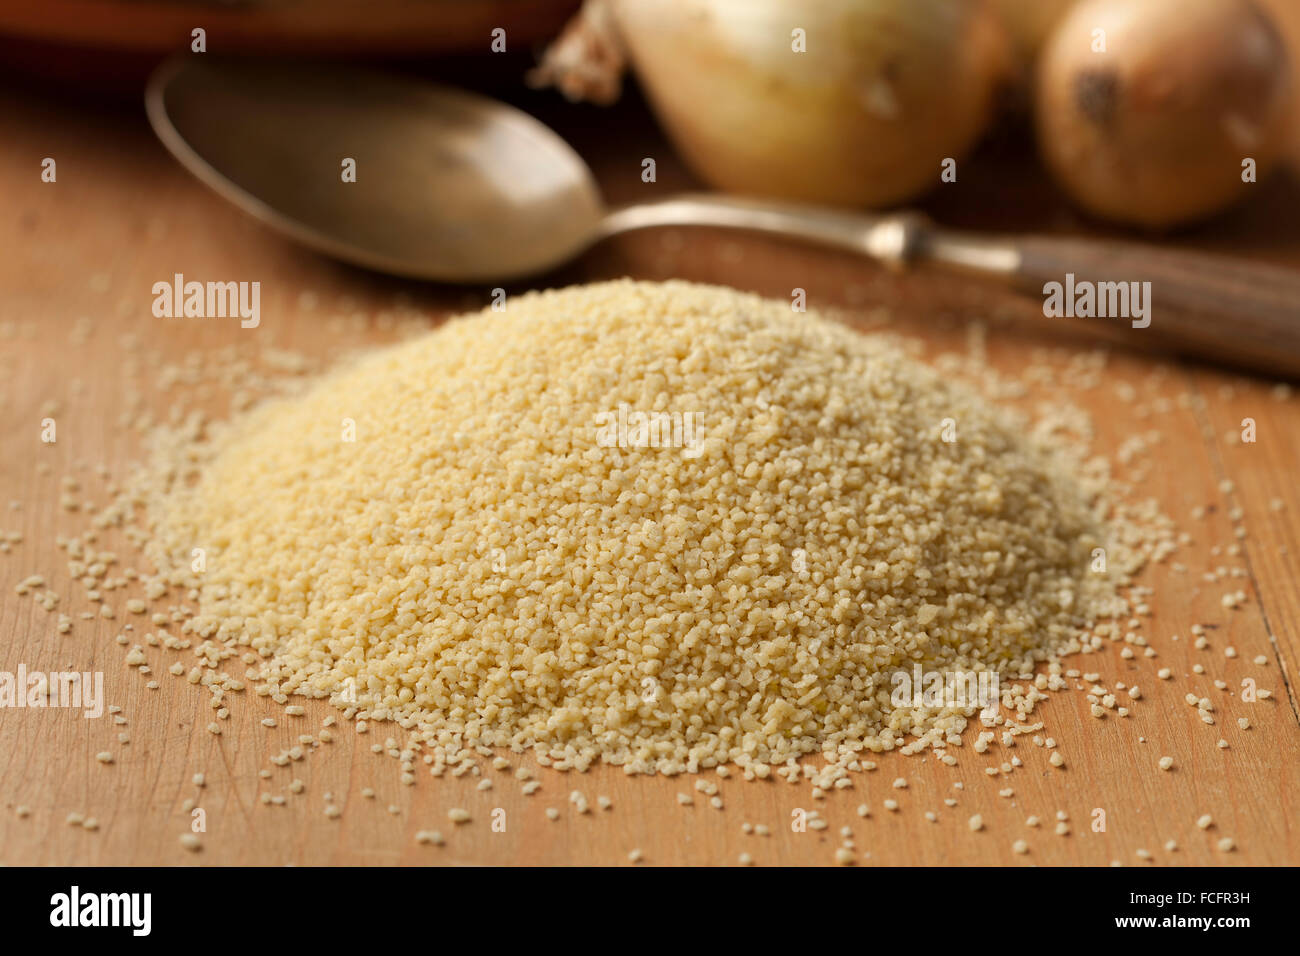 Les grains de couscous, matières premières alimentaires populaires dans les pays de l'Afrique du Nord Banque D'Images